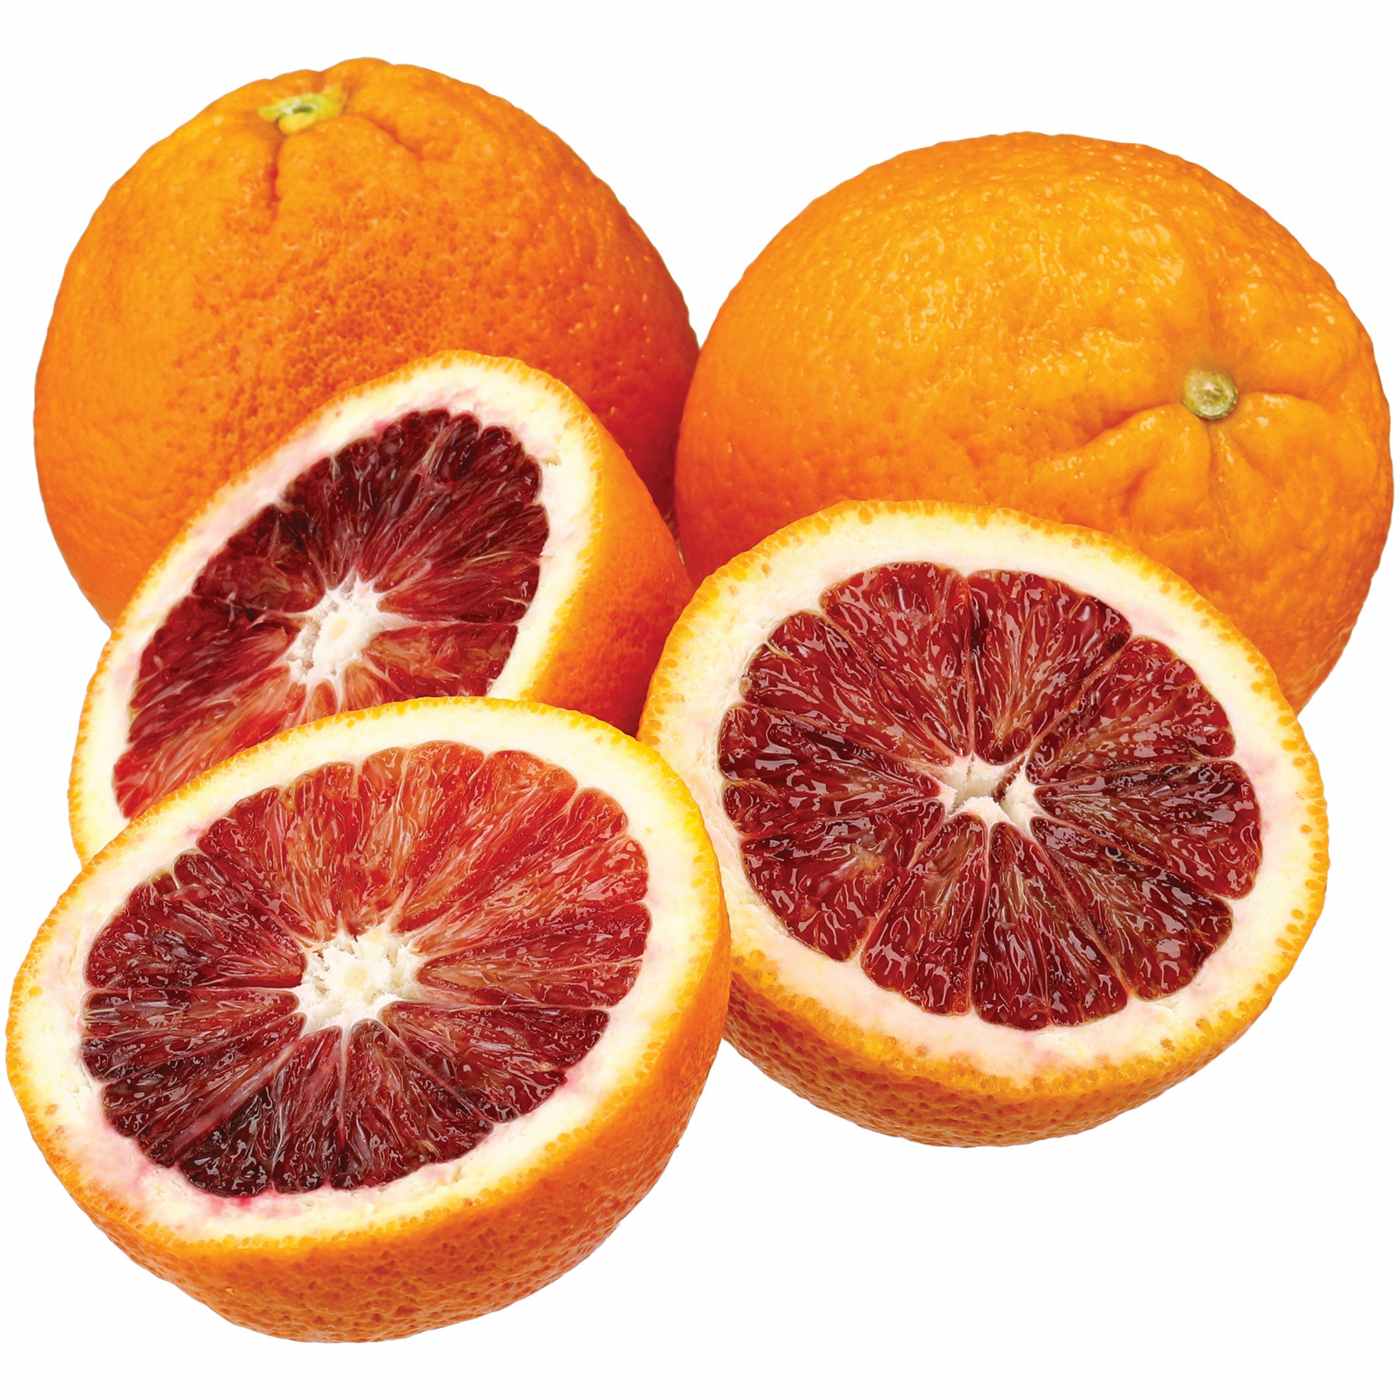 Fresh Blood Orange; image 1 of 2